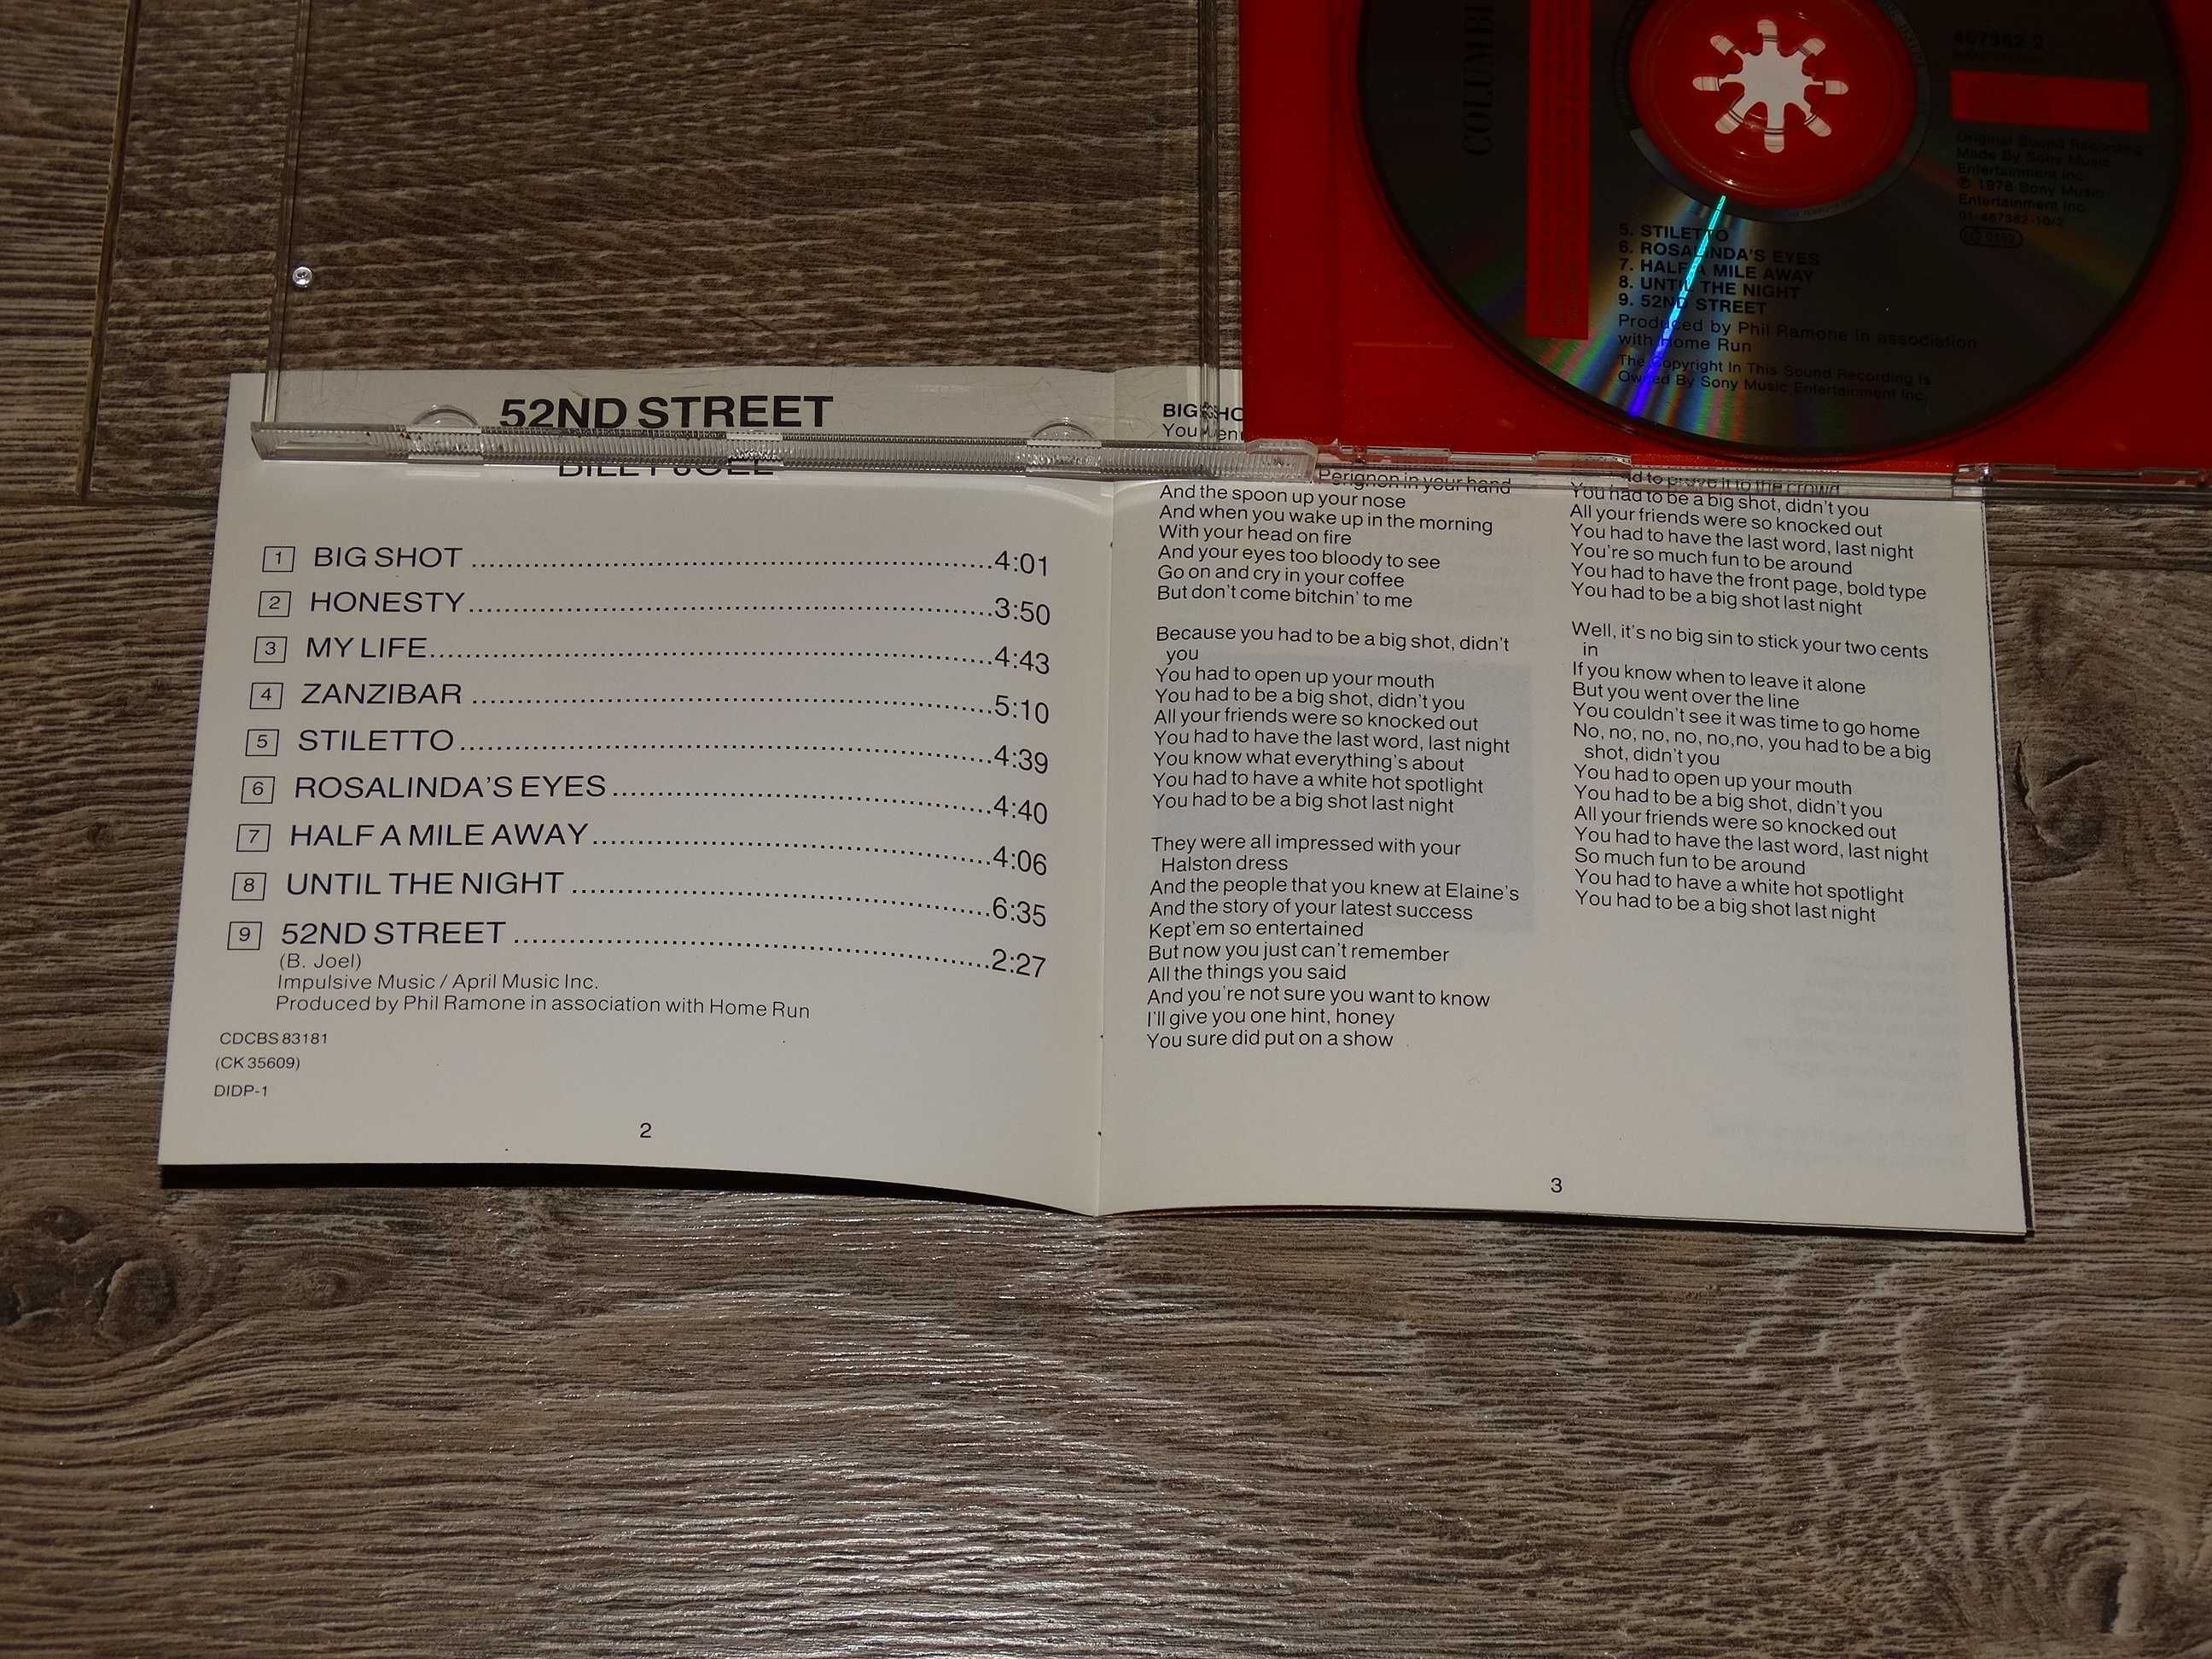 Billy Joel 52nd Street CD